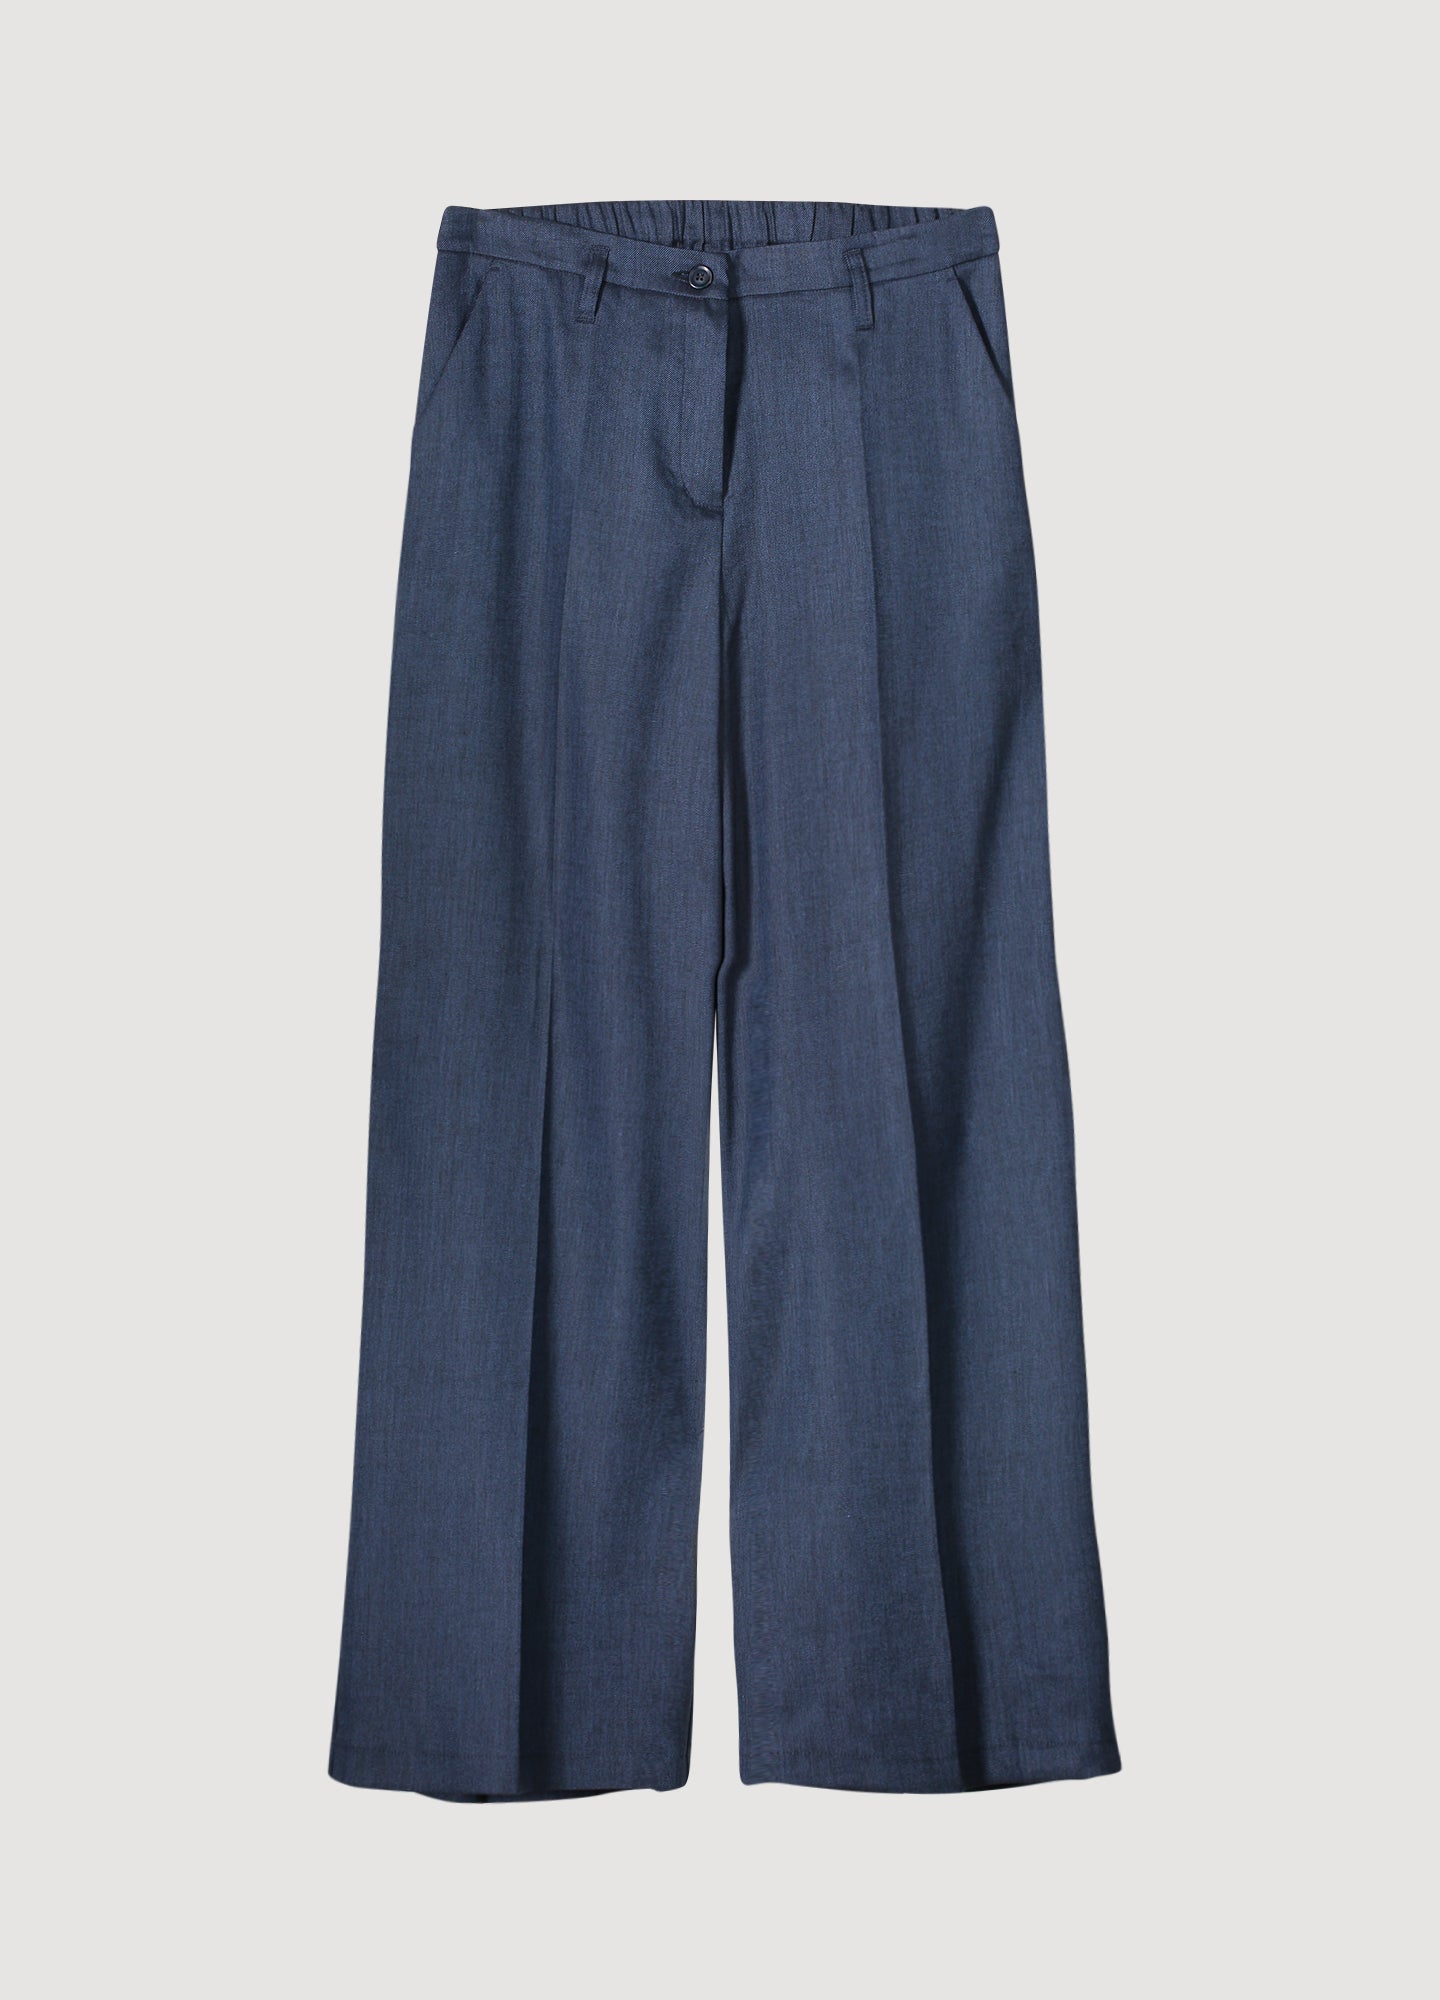 Summum Woman | trousers linen blend - night sky - 4s2600-11780